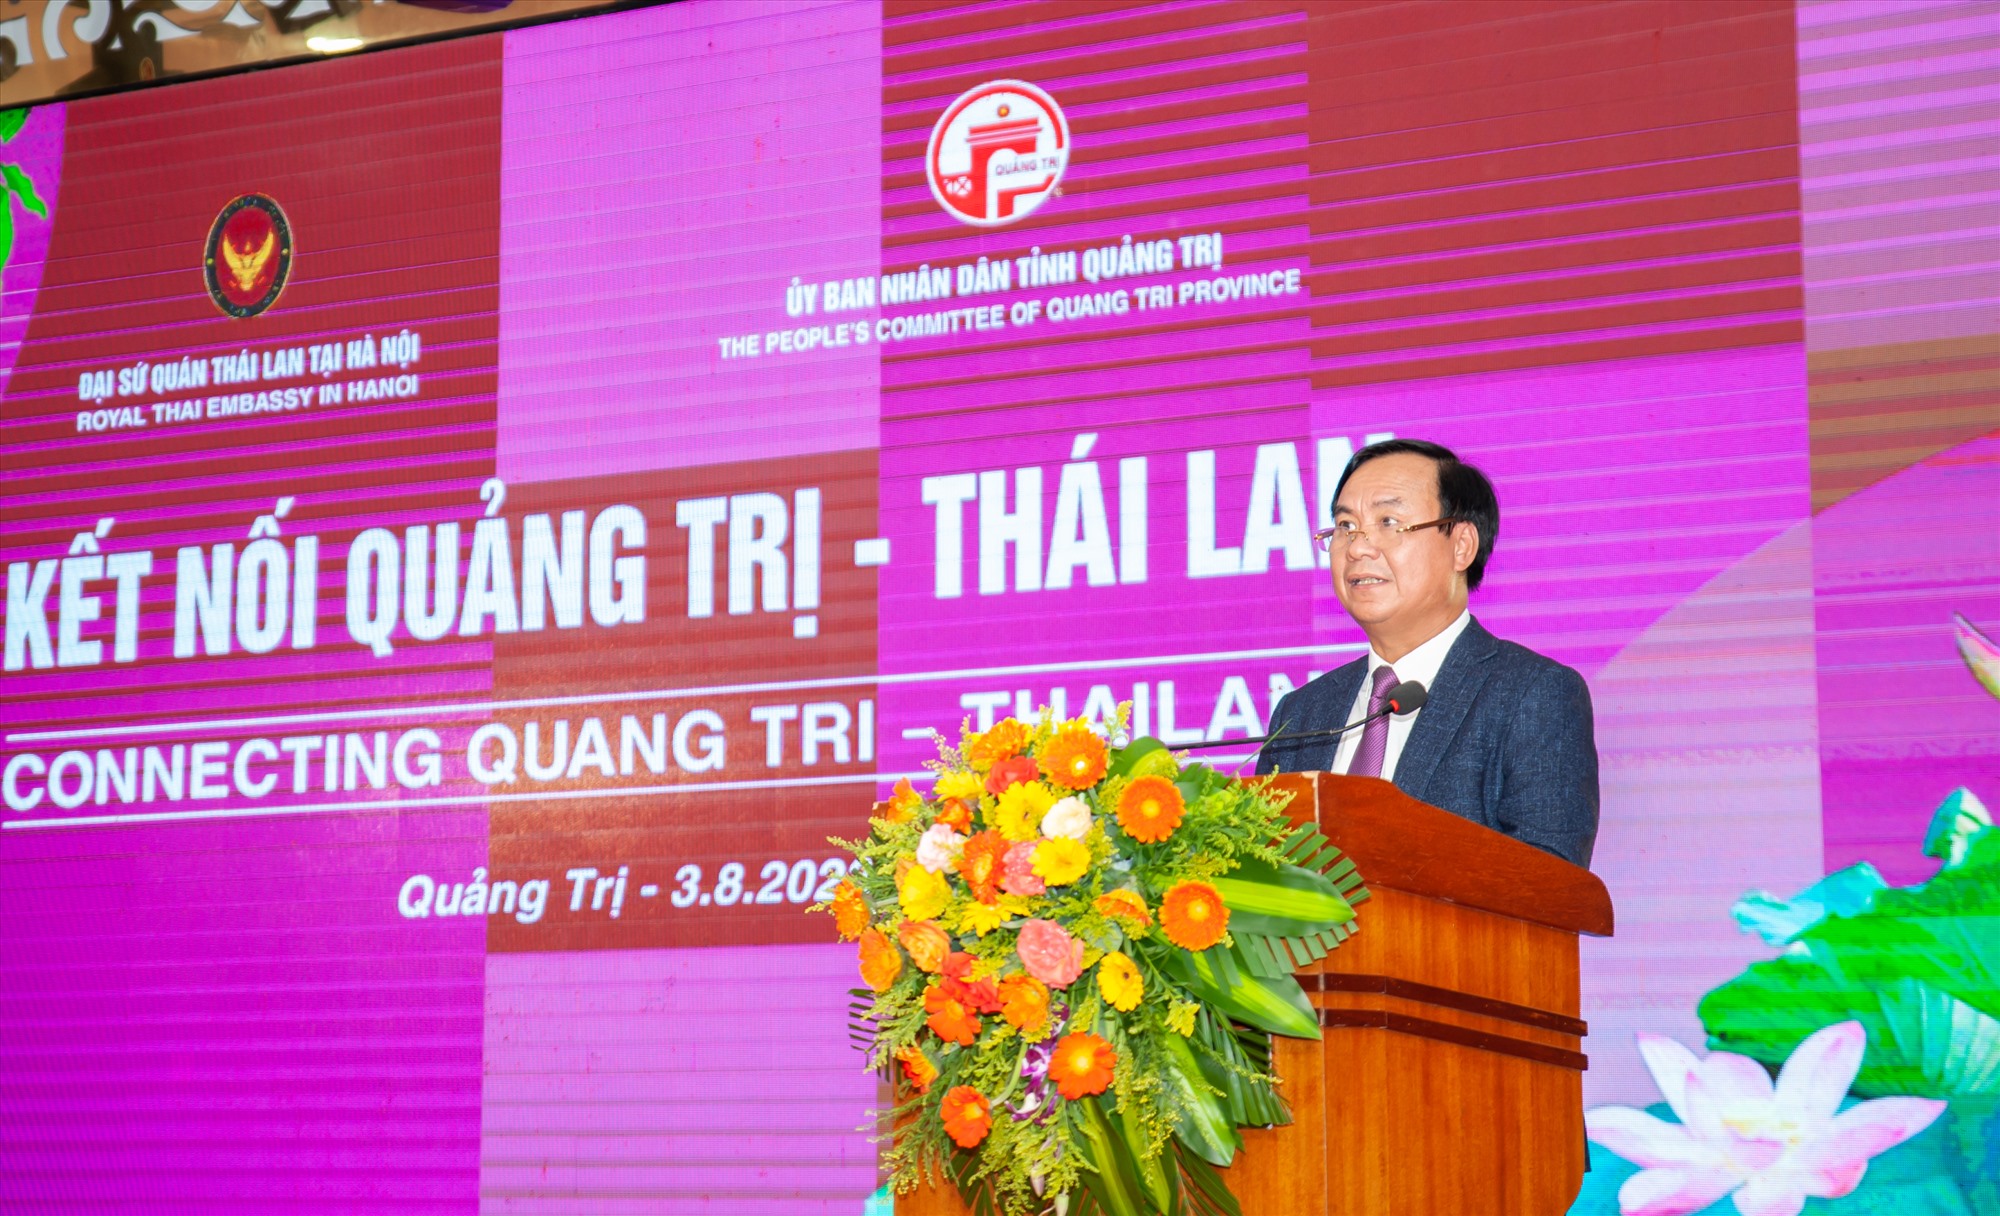 Lễ ký kết biên bản ghi nhớ hợp tác giữa Sở Ngoại vụ tỉnh Quảng Trị với Hiệp hội Doanh nghiệp Thái Lan tại Việt Nam - Ảnh: Trần Tuyền